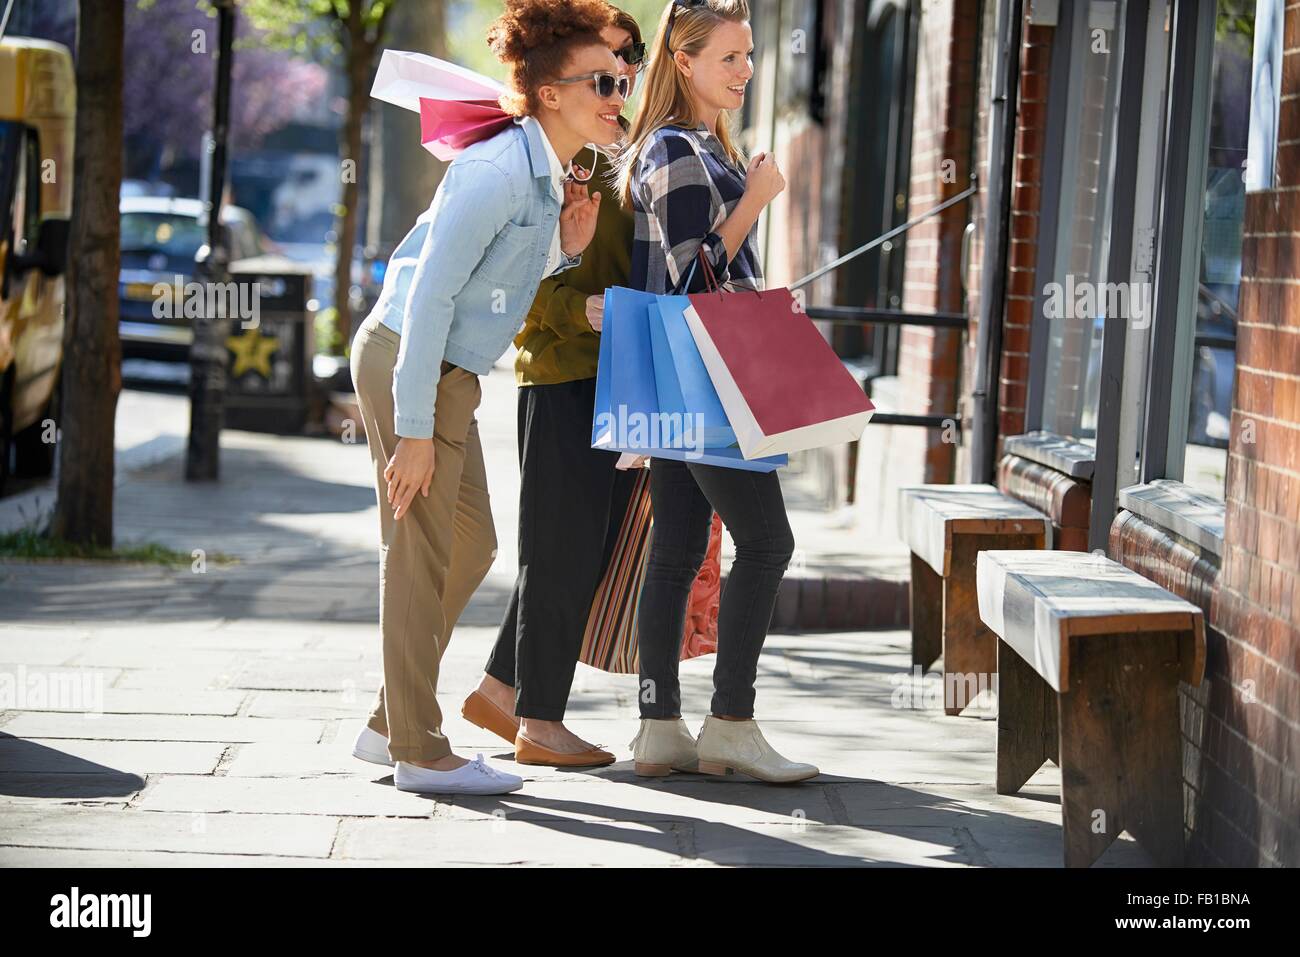 Vue latérale de la femme holding shopping bags standing in street à la recherche de vitrine Banque D'Images